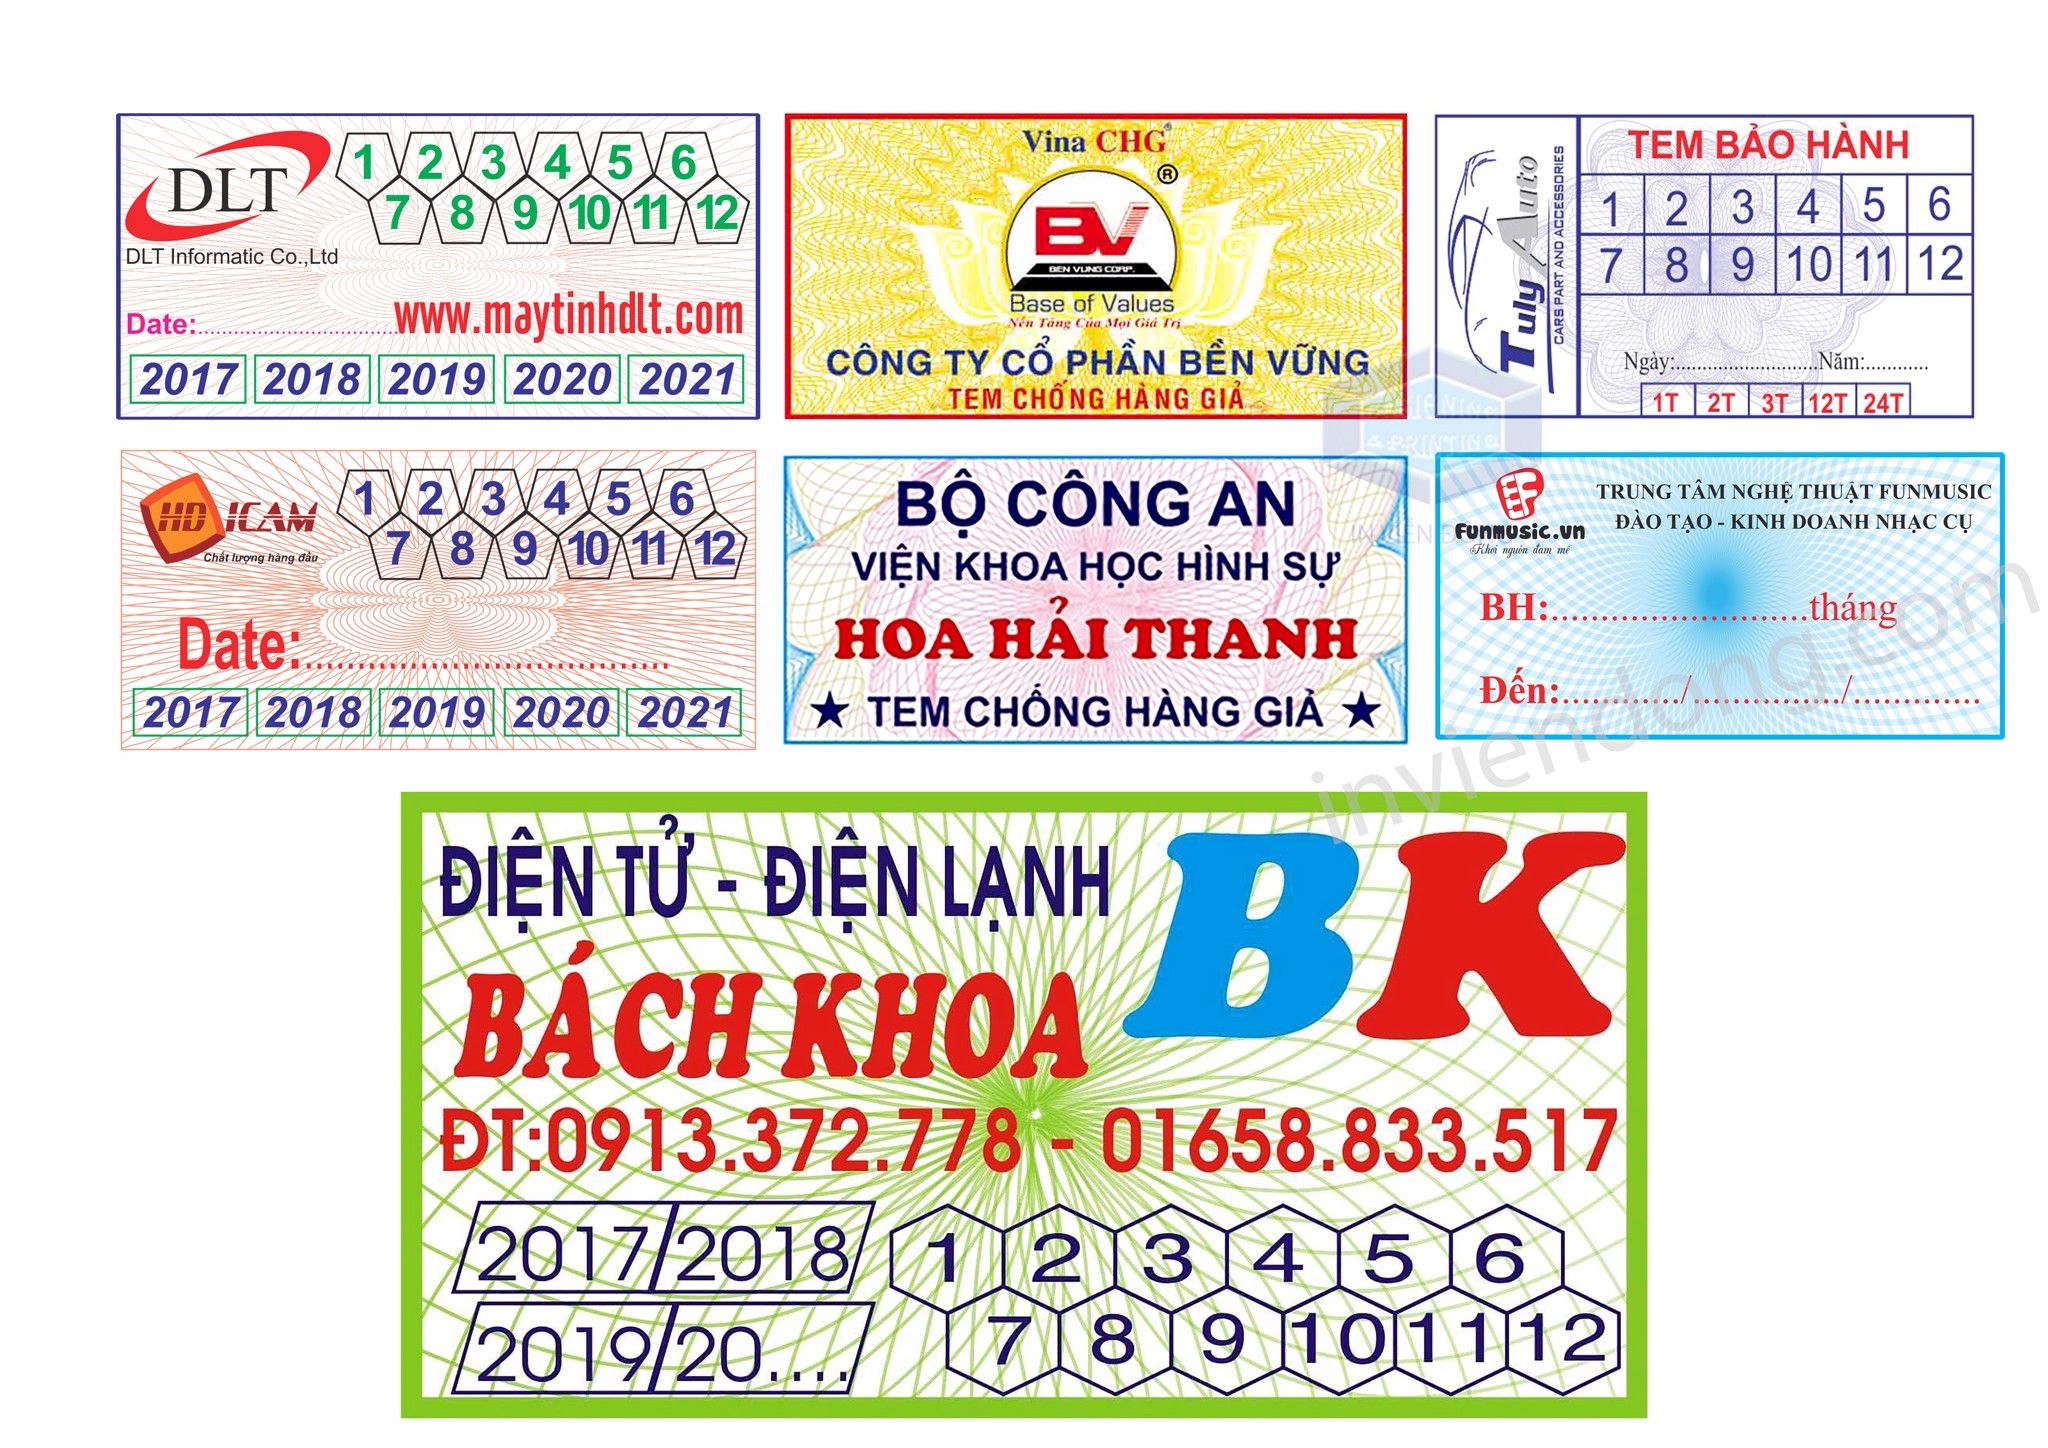 Công ty in tem vỡ giá rẻ tại Hà Nội